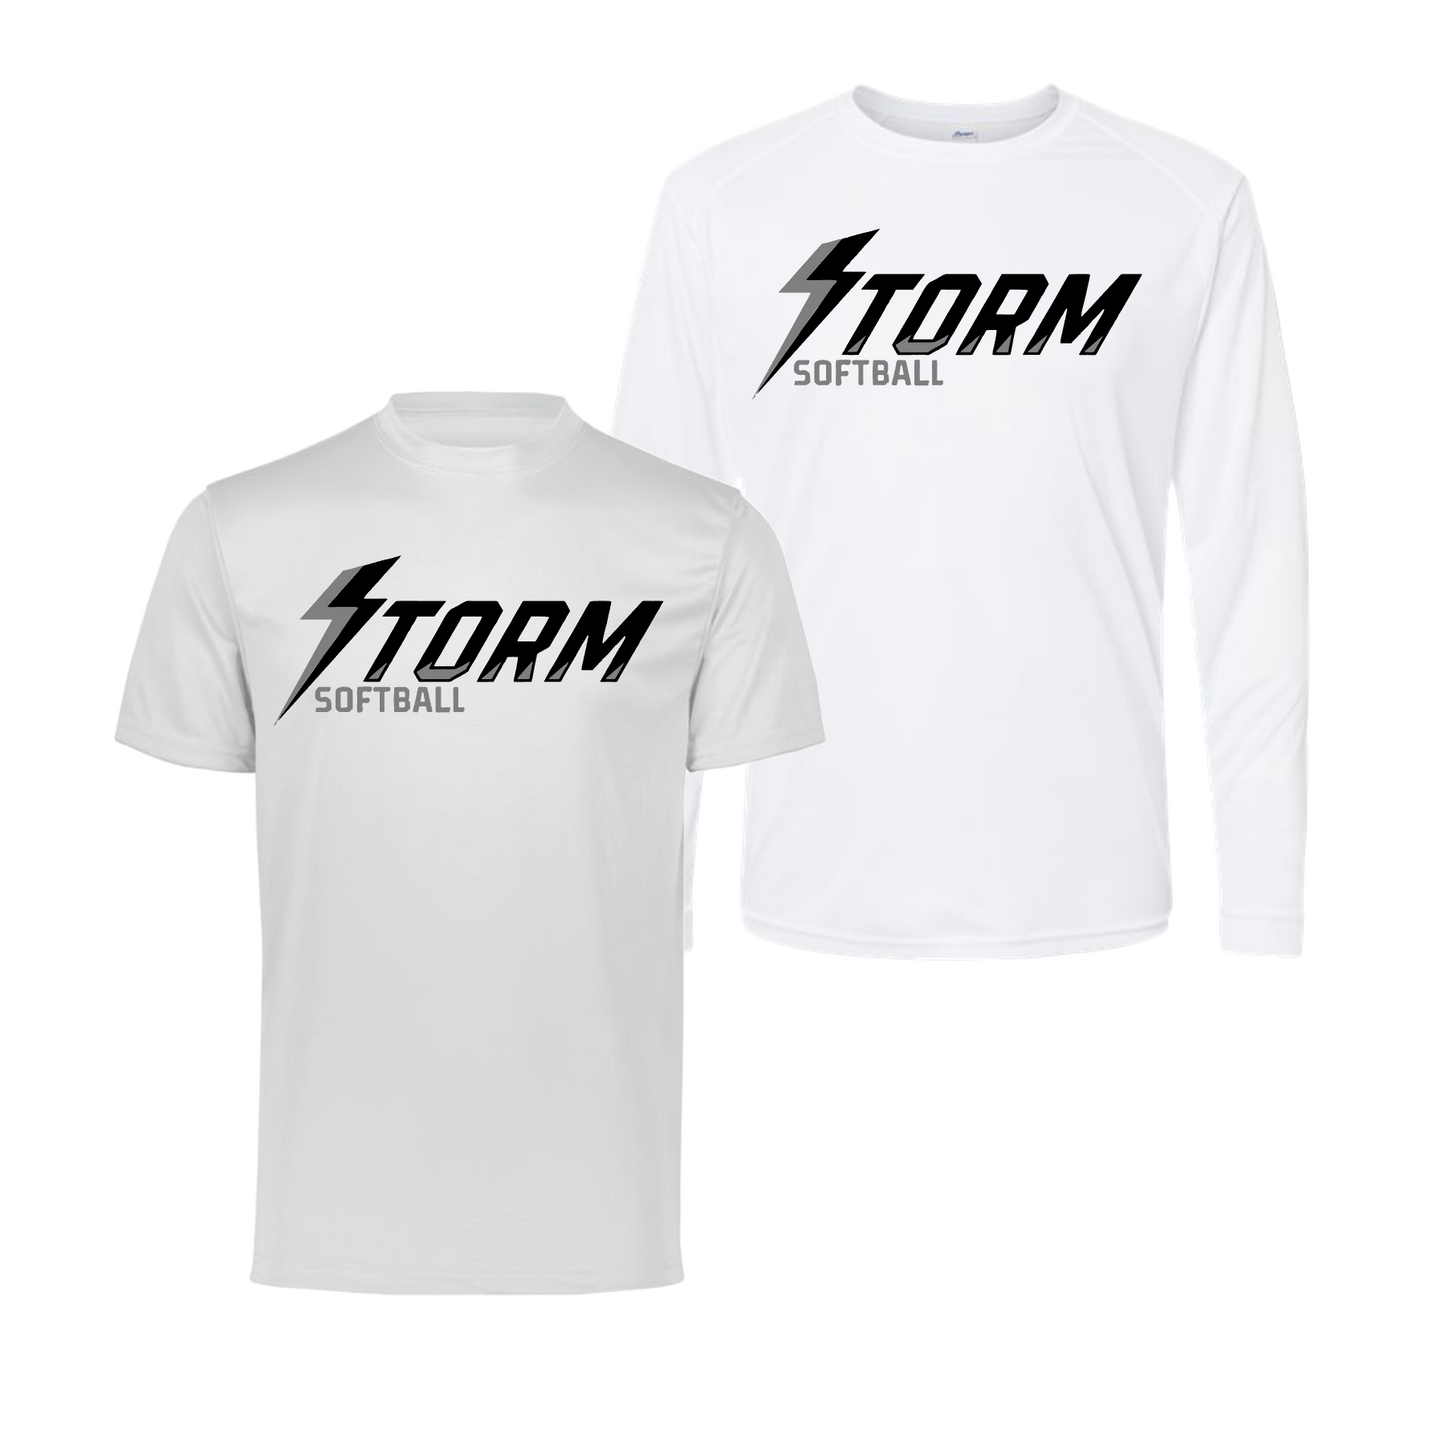 Storm Softball Tshirt, White Storm Softball Tee, Storm Spiritwear